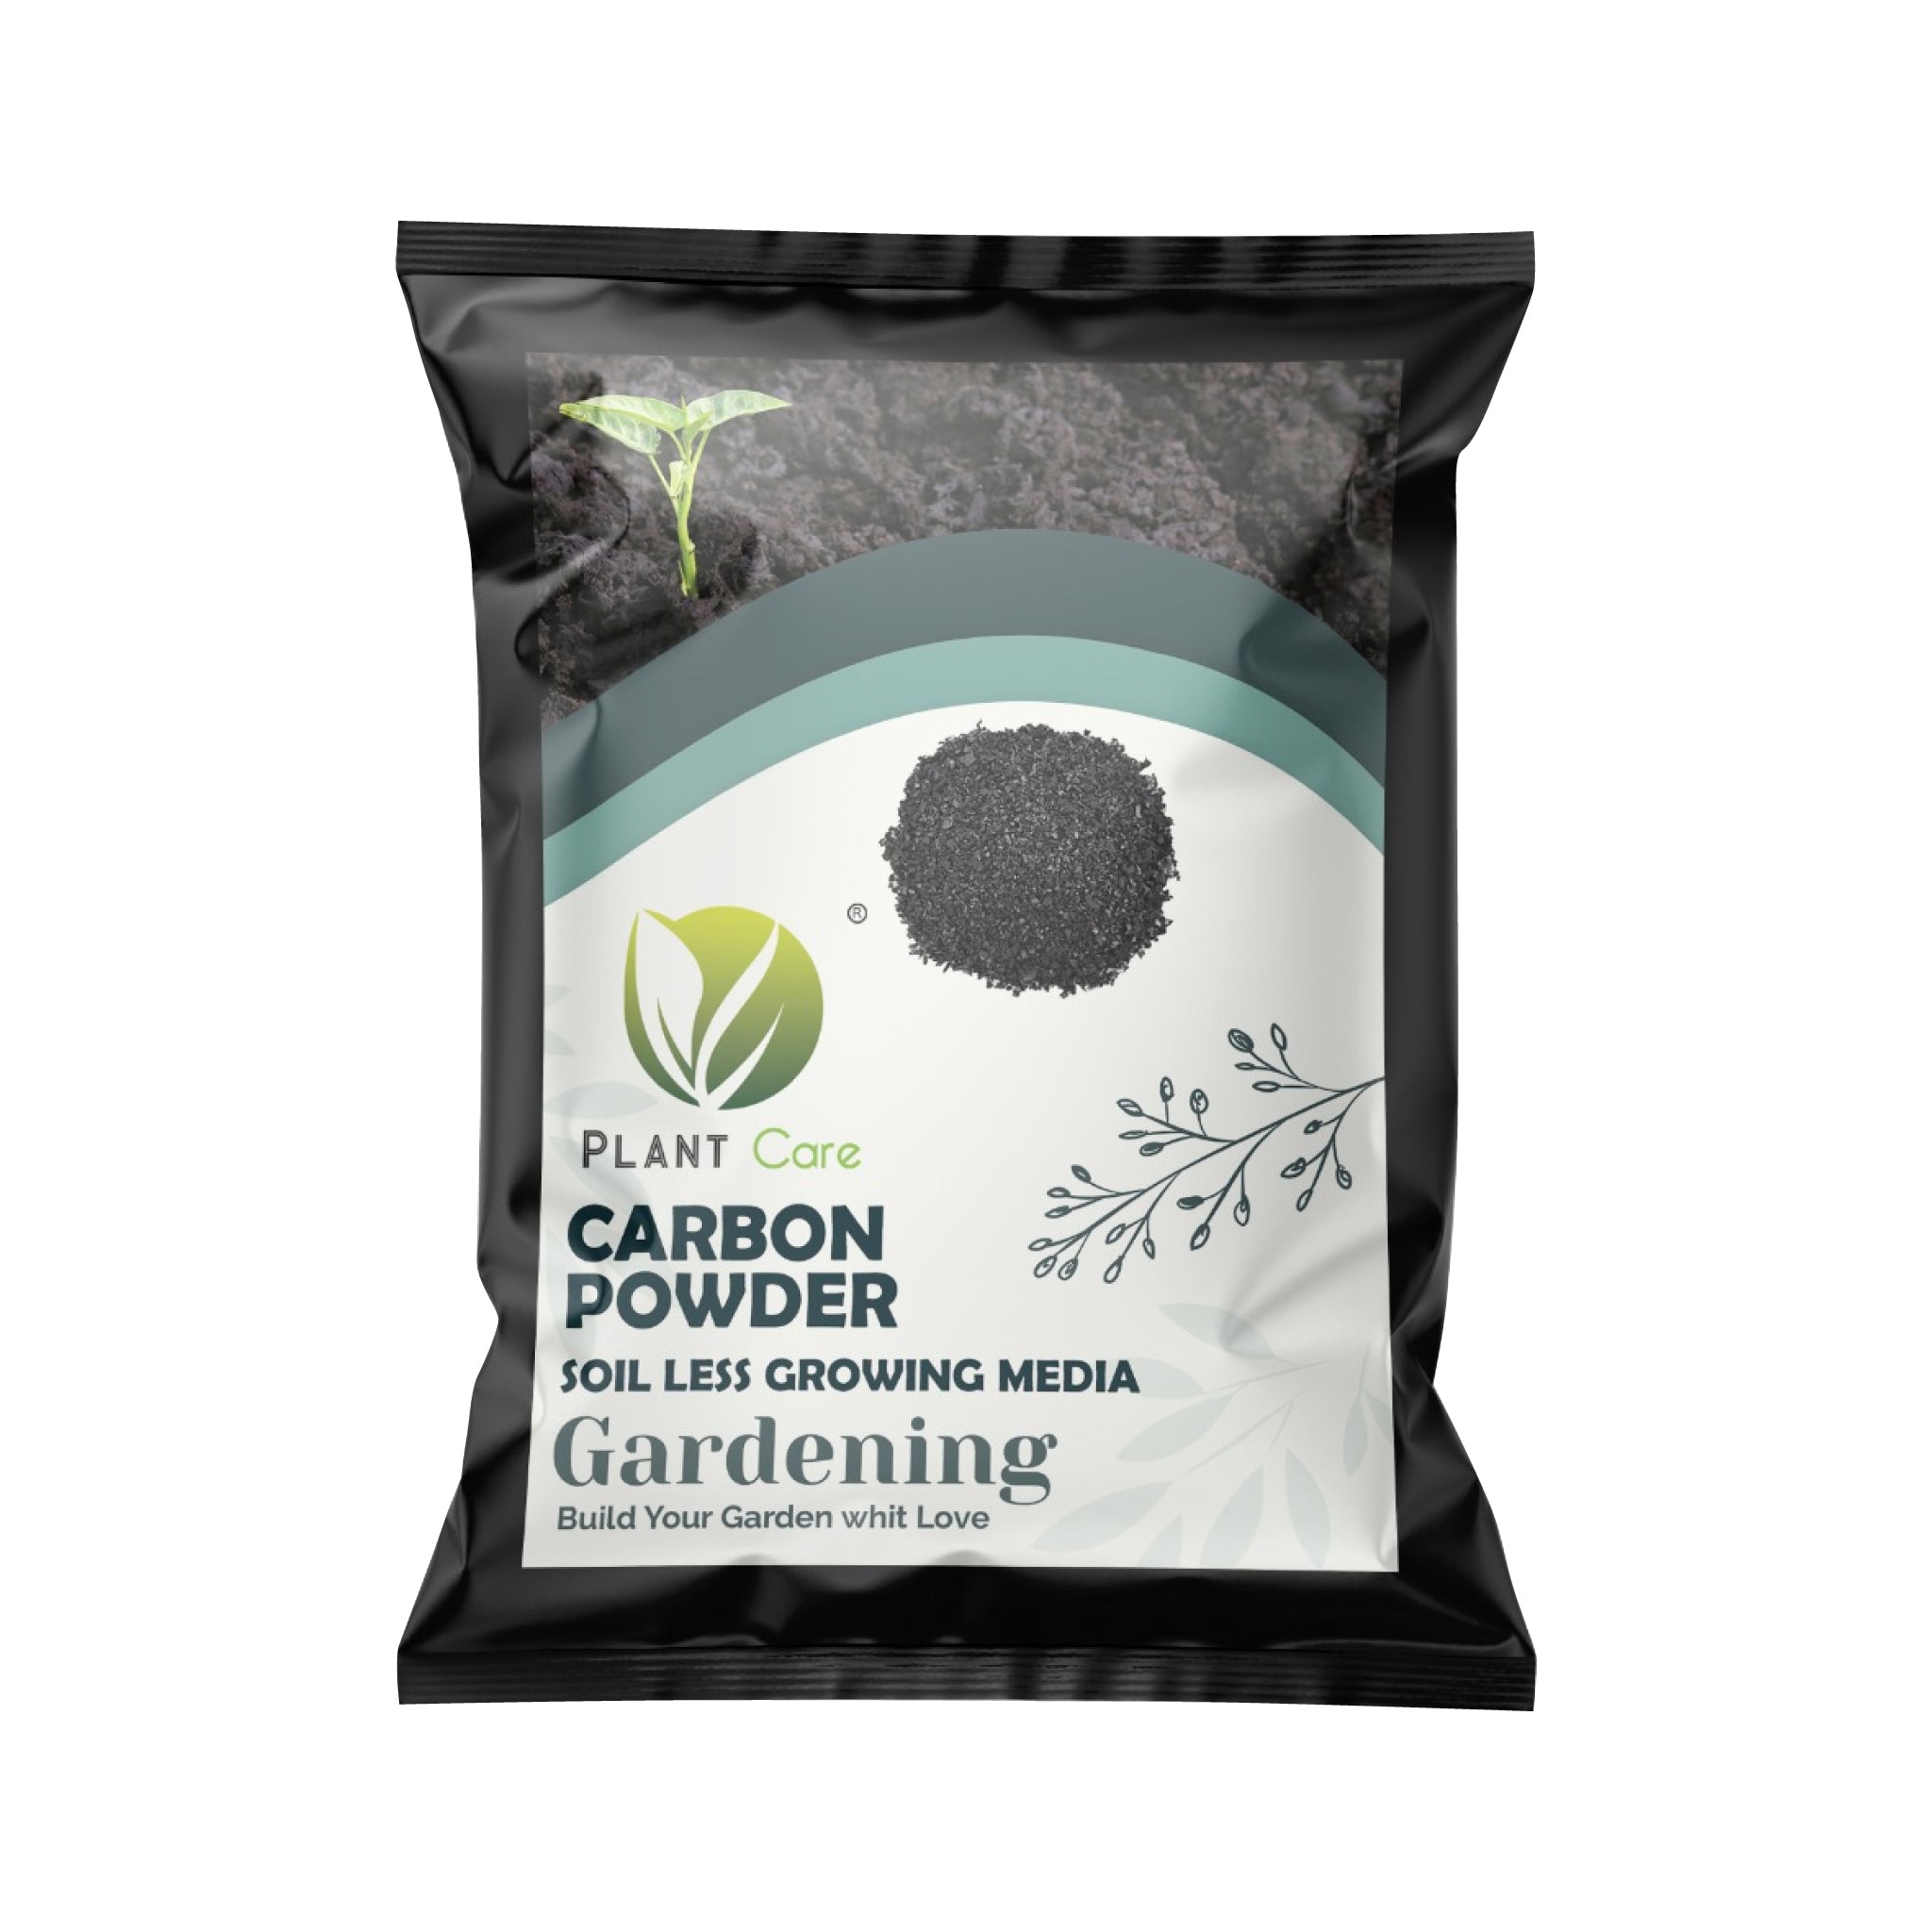 Fine-grained carbon powder for soil improvement